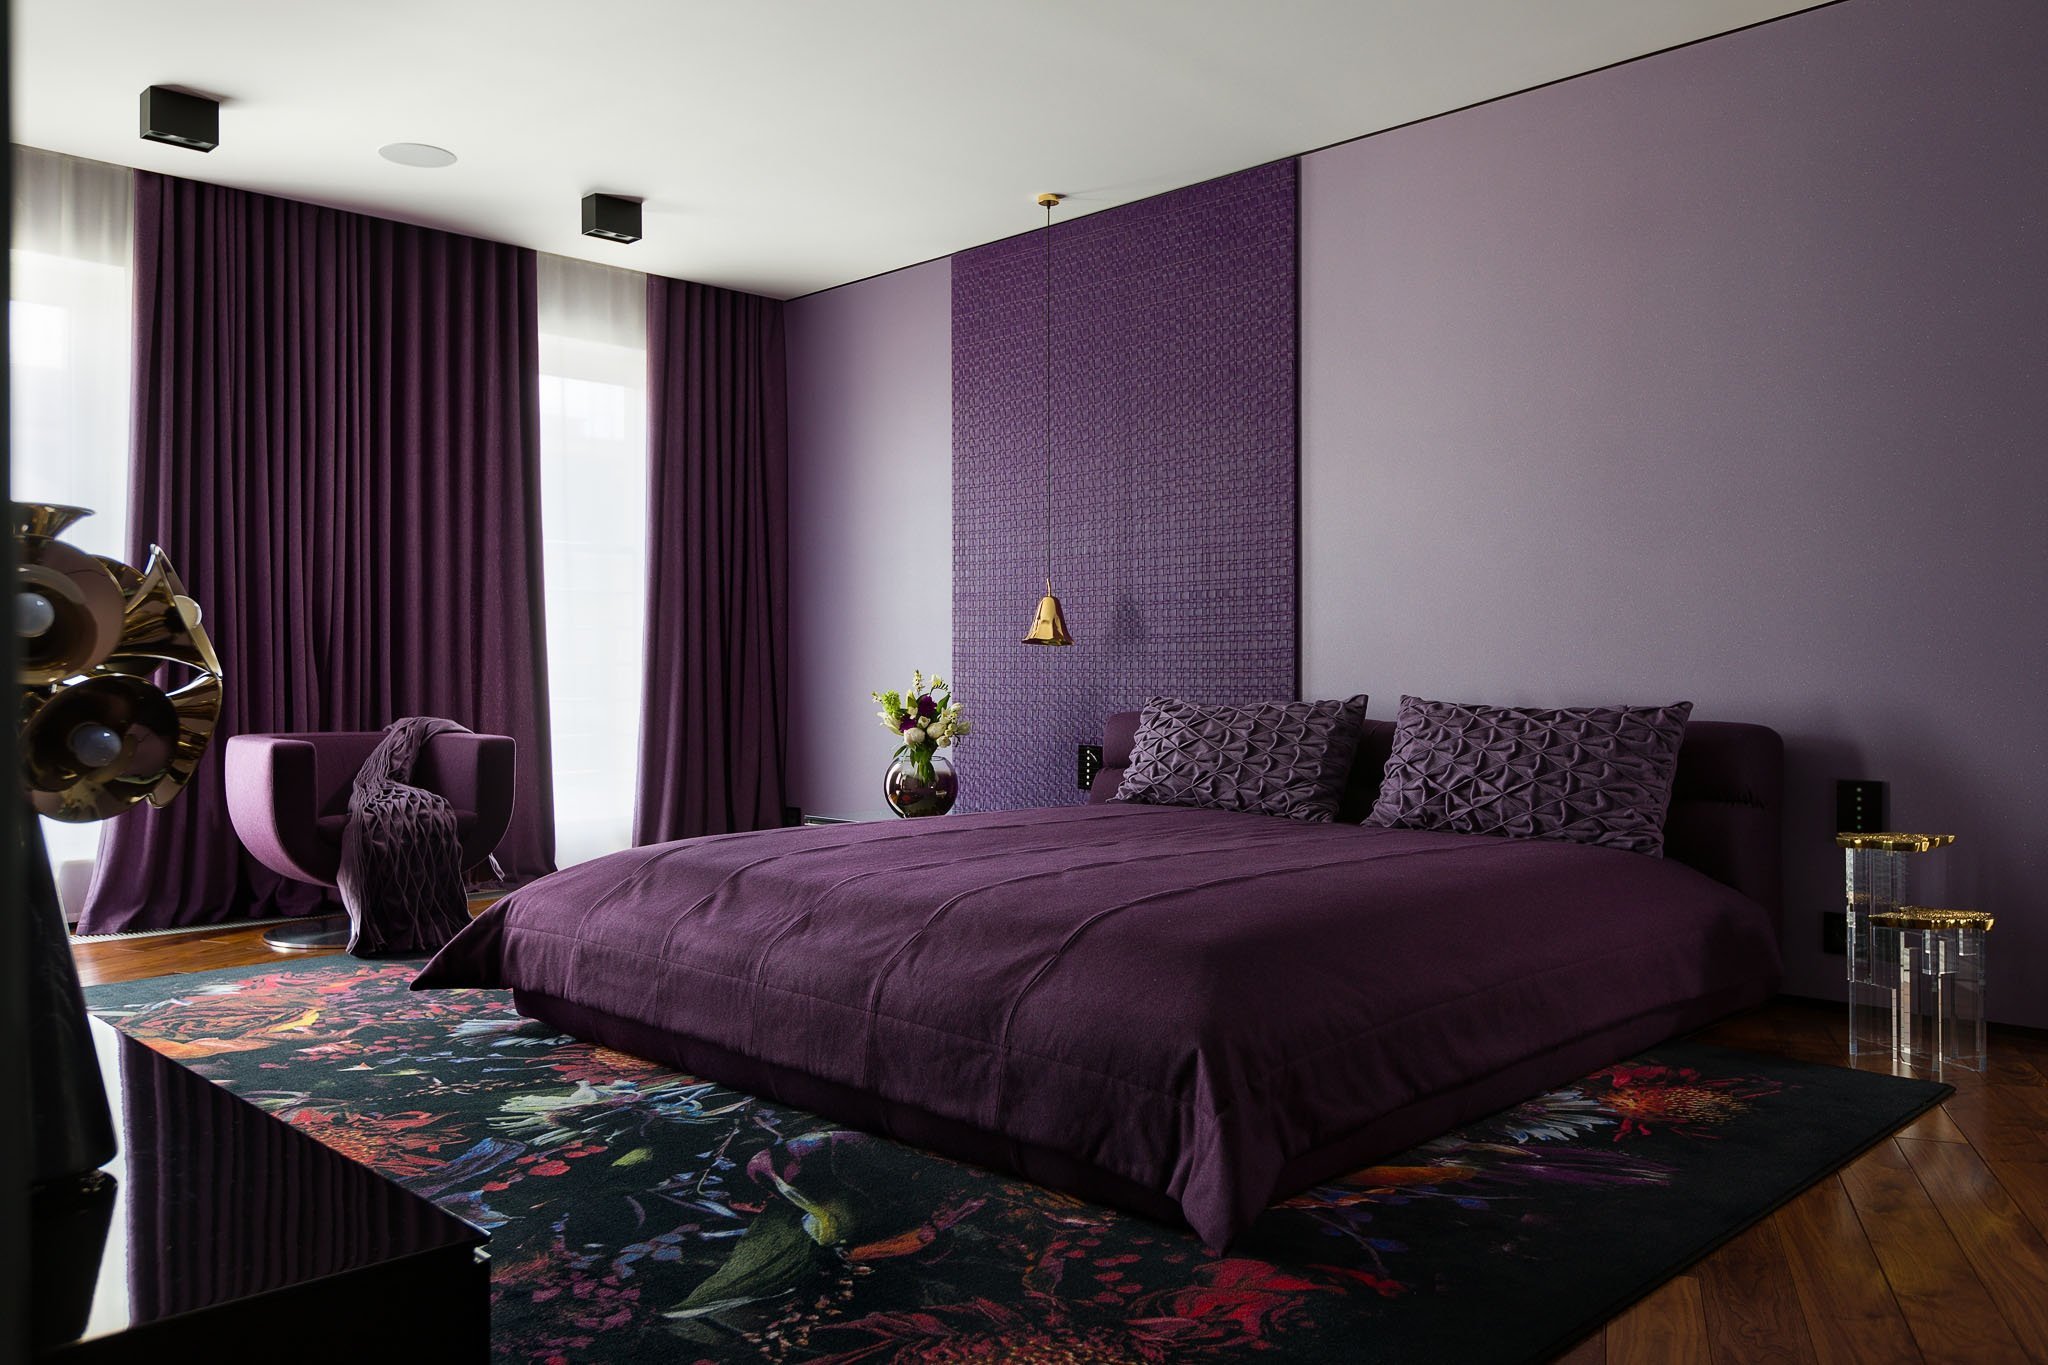 Интерьер спальной комнаты в фиолетовых тонах